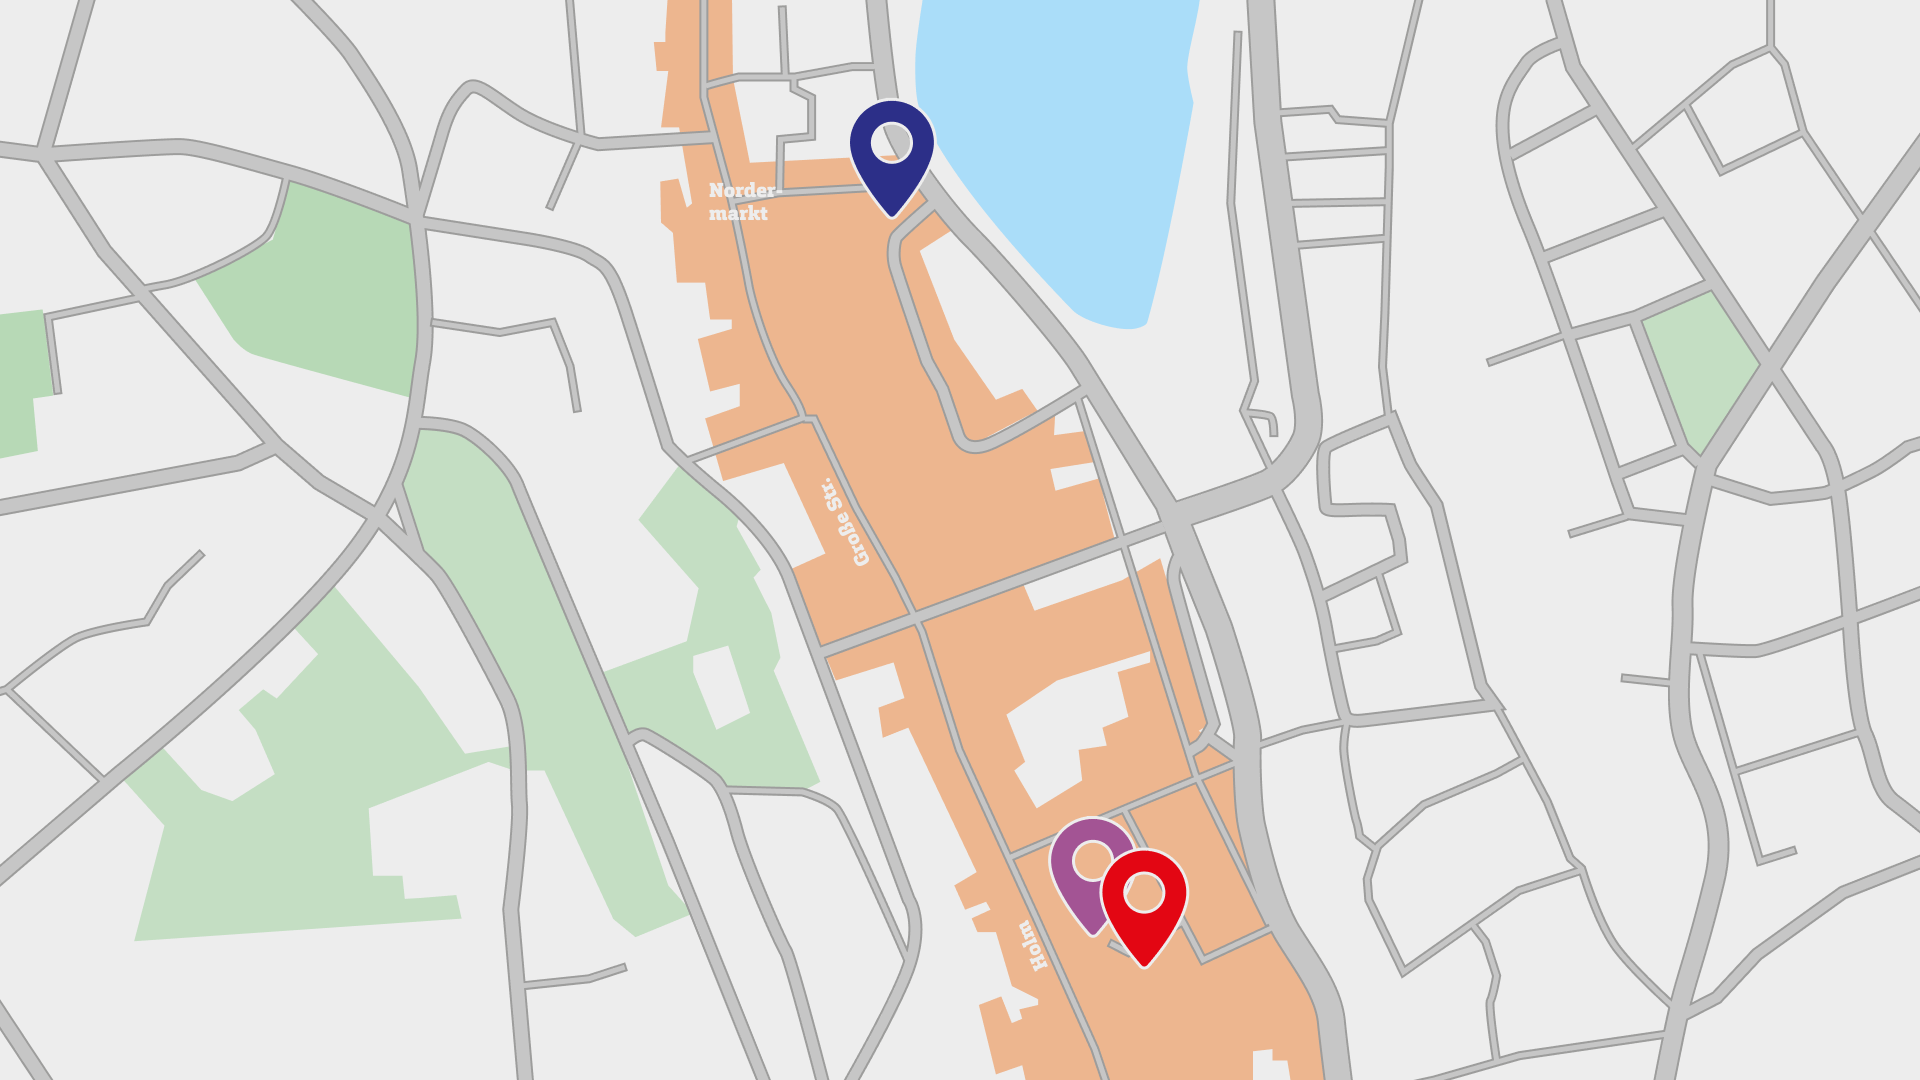 Kartenausschnitt der Flensburger Innenstadt, drei Orte sind mit farbigen Markern gekennzeichnet.